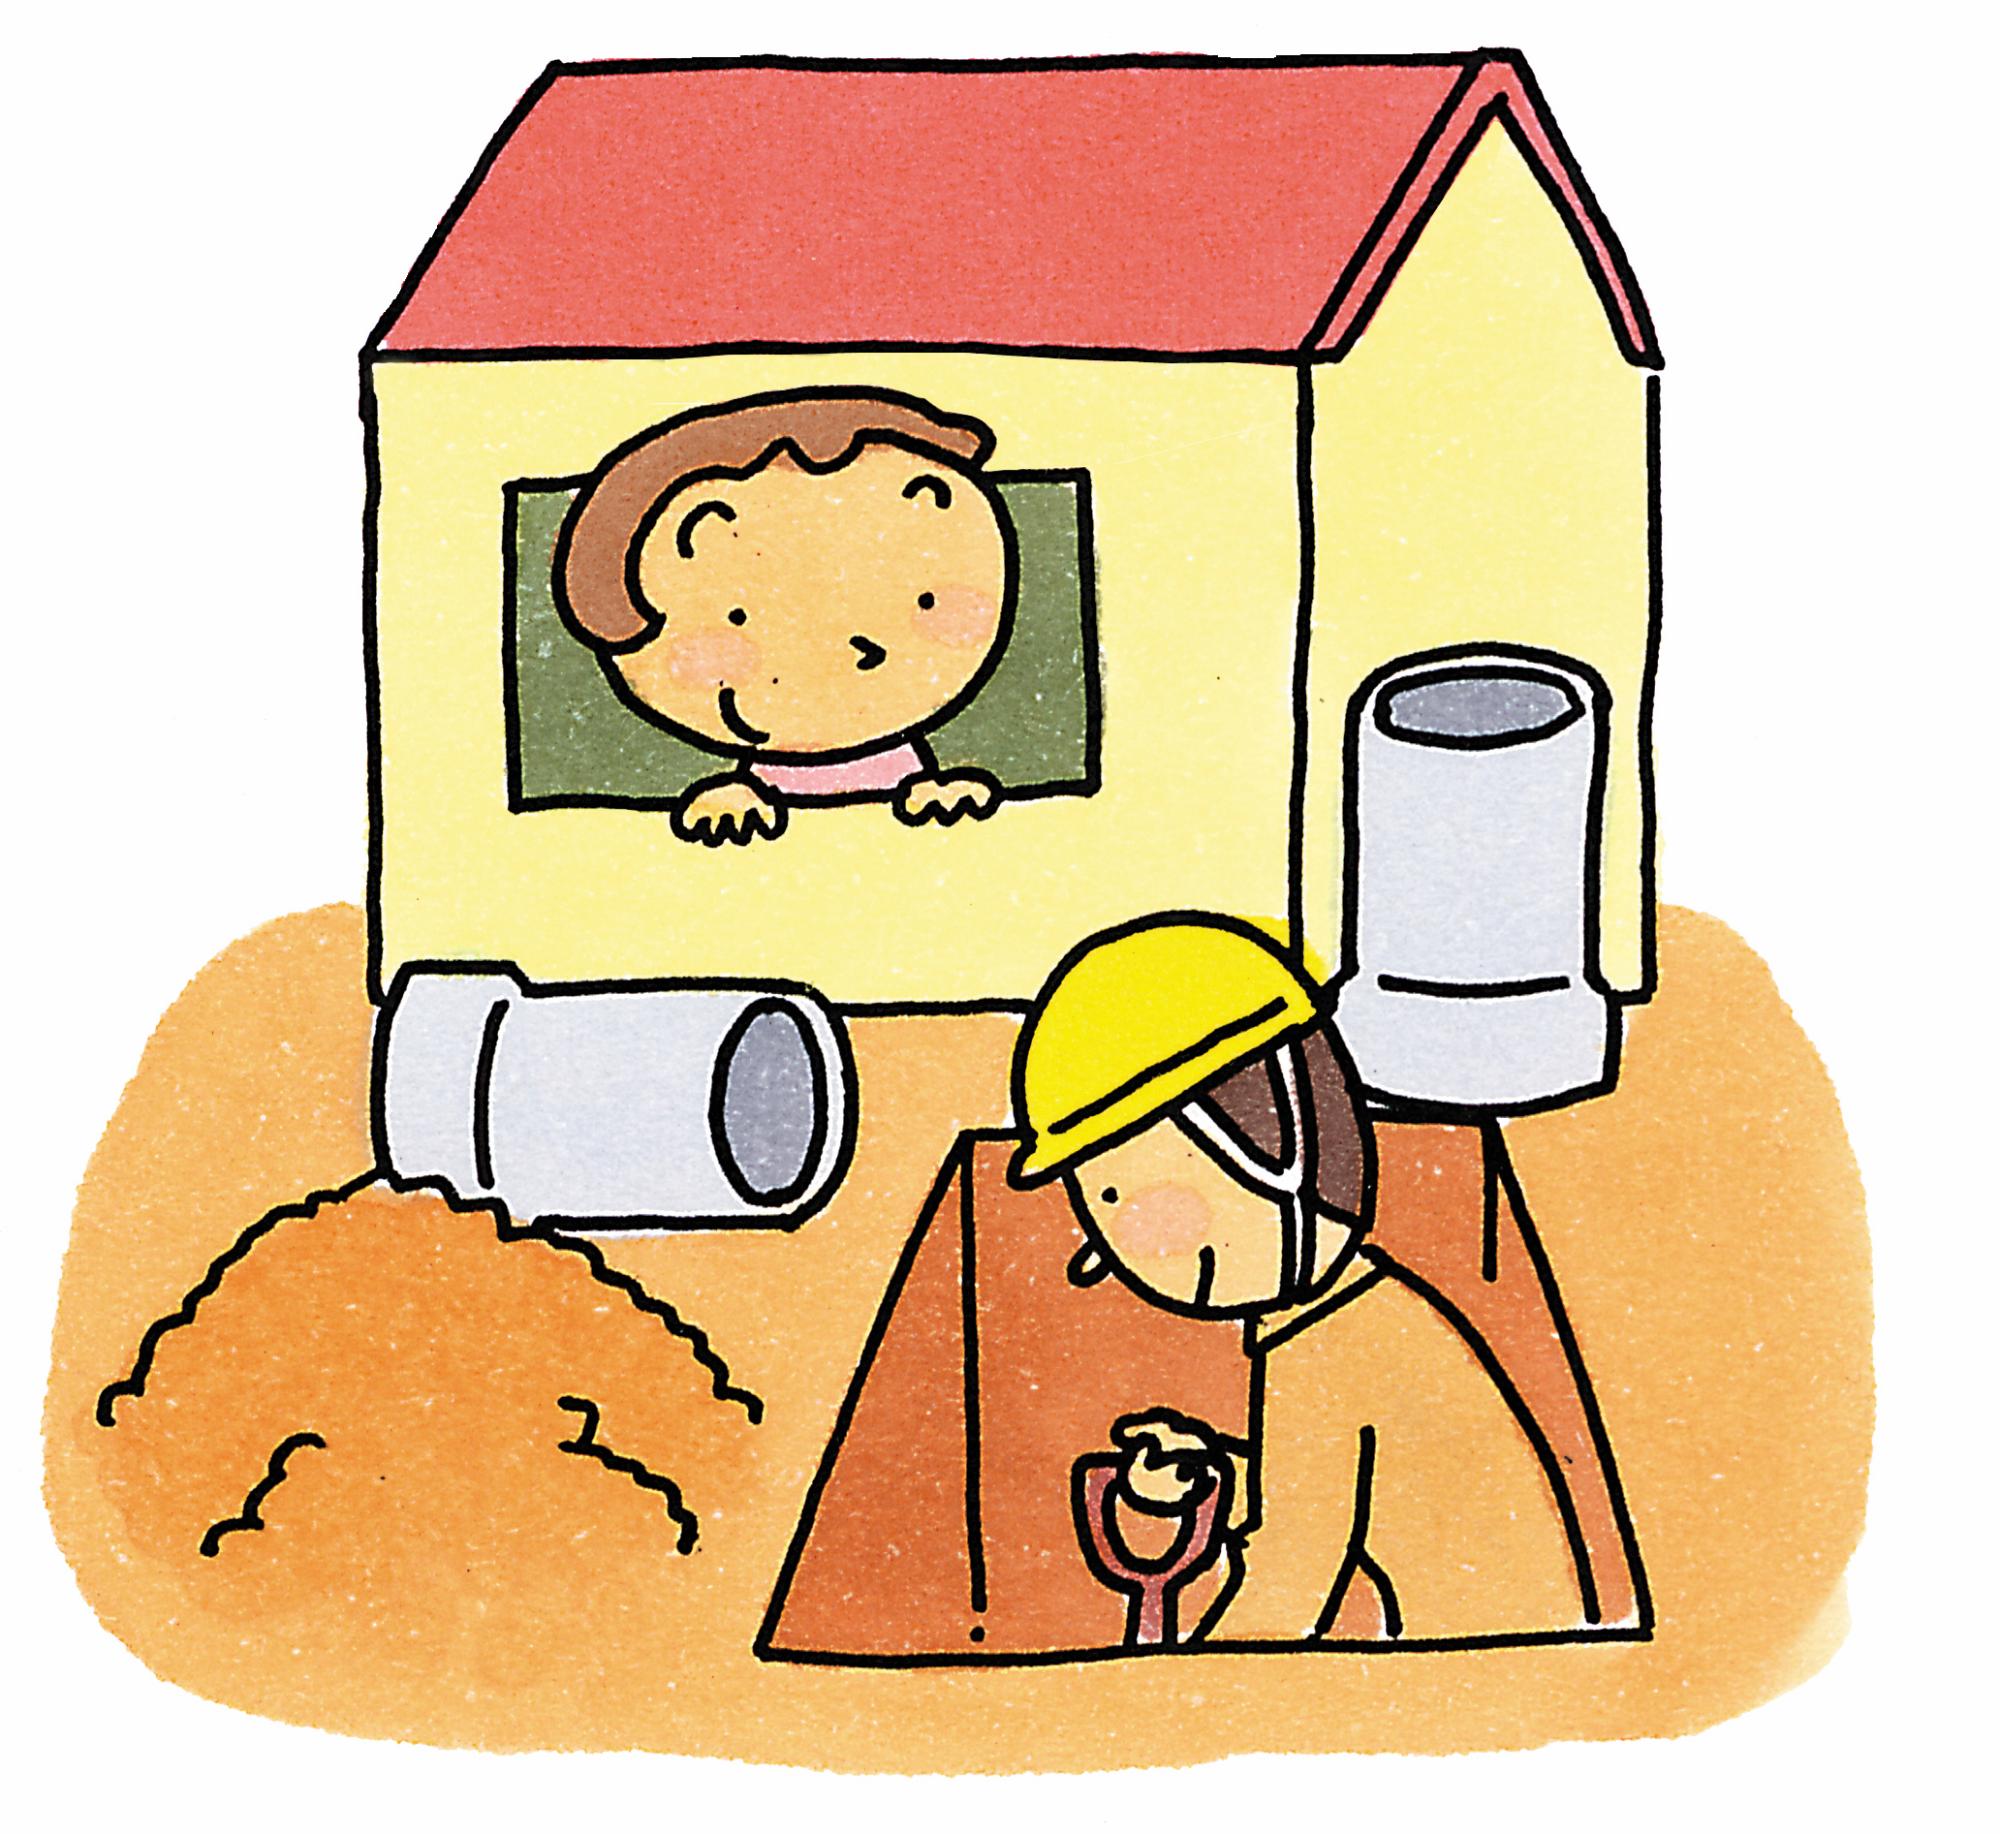 排水工事をしている作業員の男性を家の中から見ている子供のイラスト